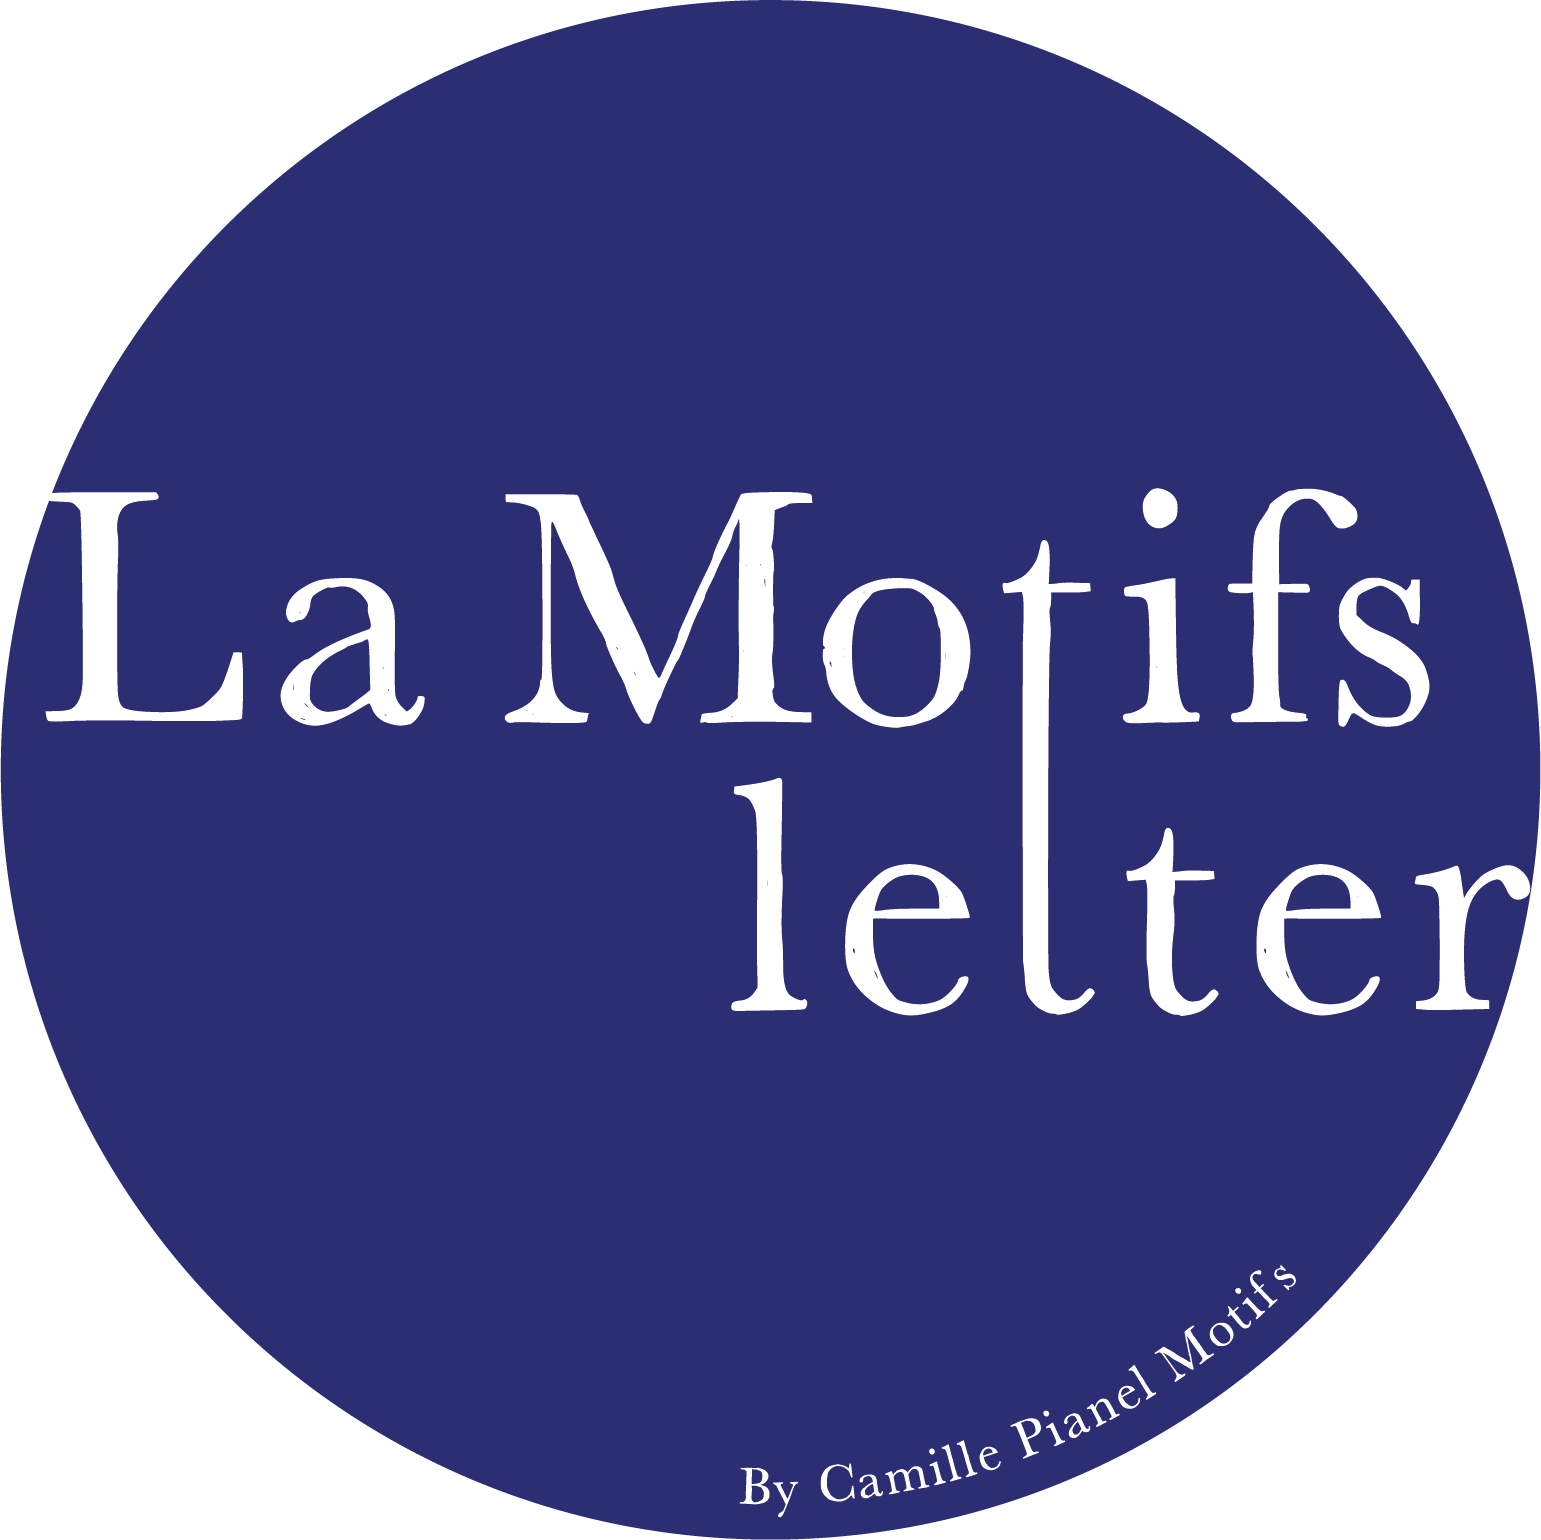 La Motifs letter by Camille Pianel motifs  Logo